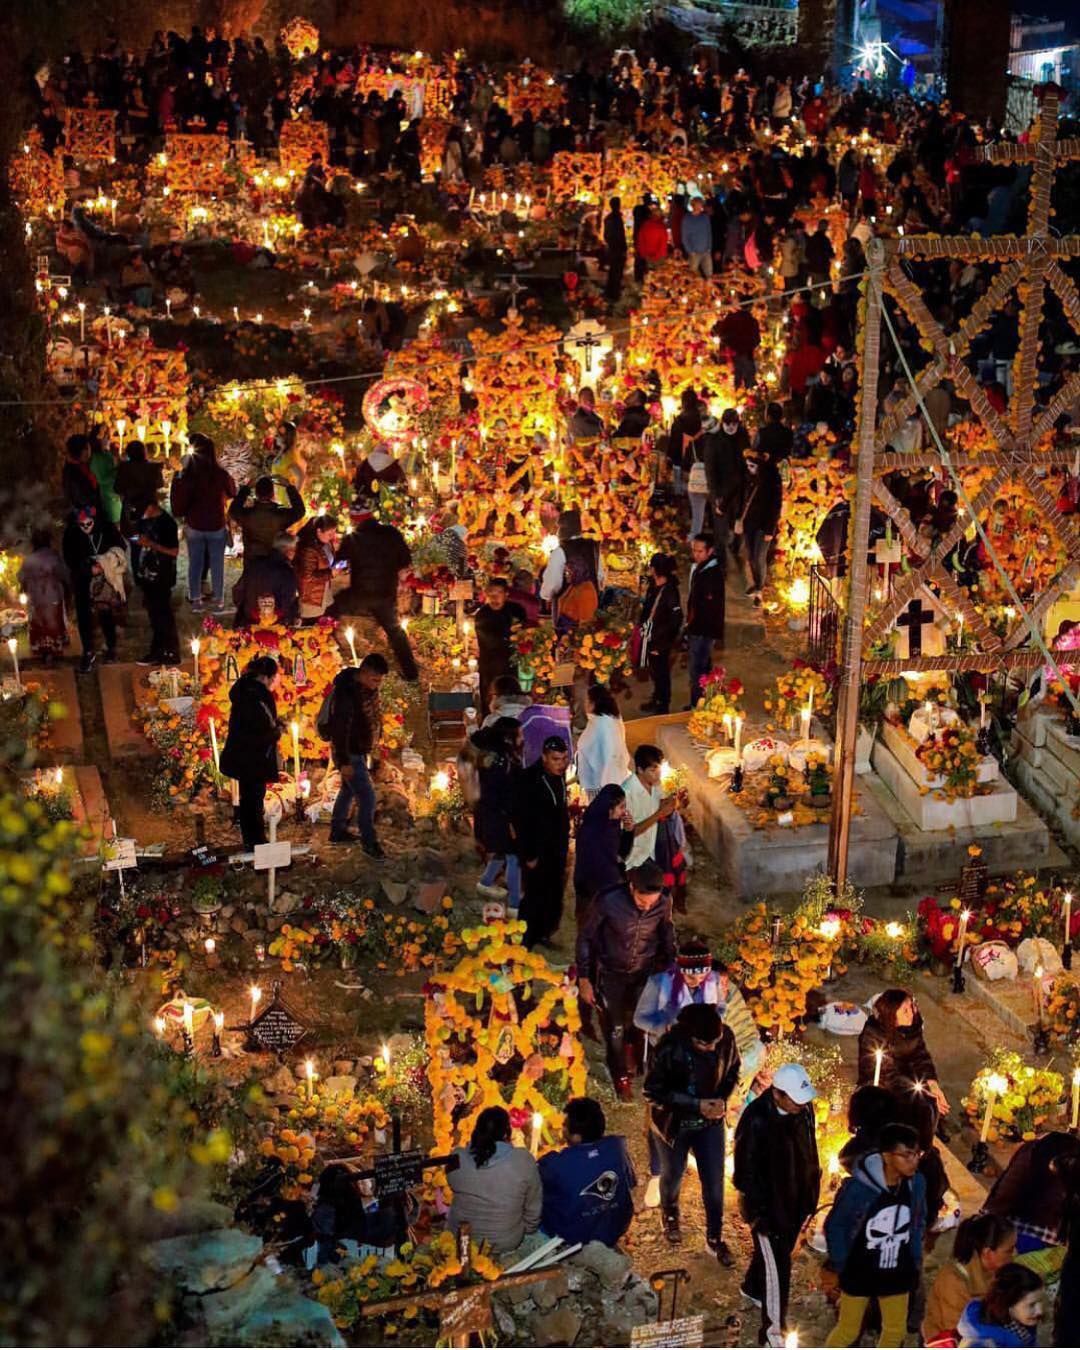 جشنواره مردگان‌ مکزیک : جشنواره مردگان‌ مکزیک نسخه مکزیکی هالووین نیست